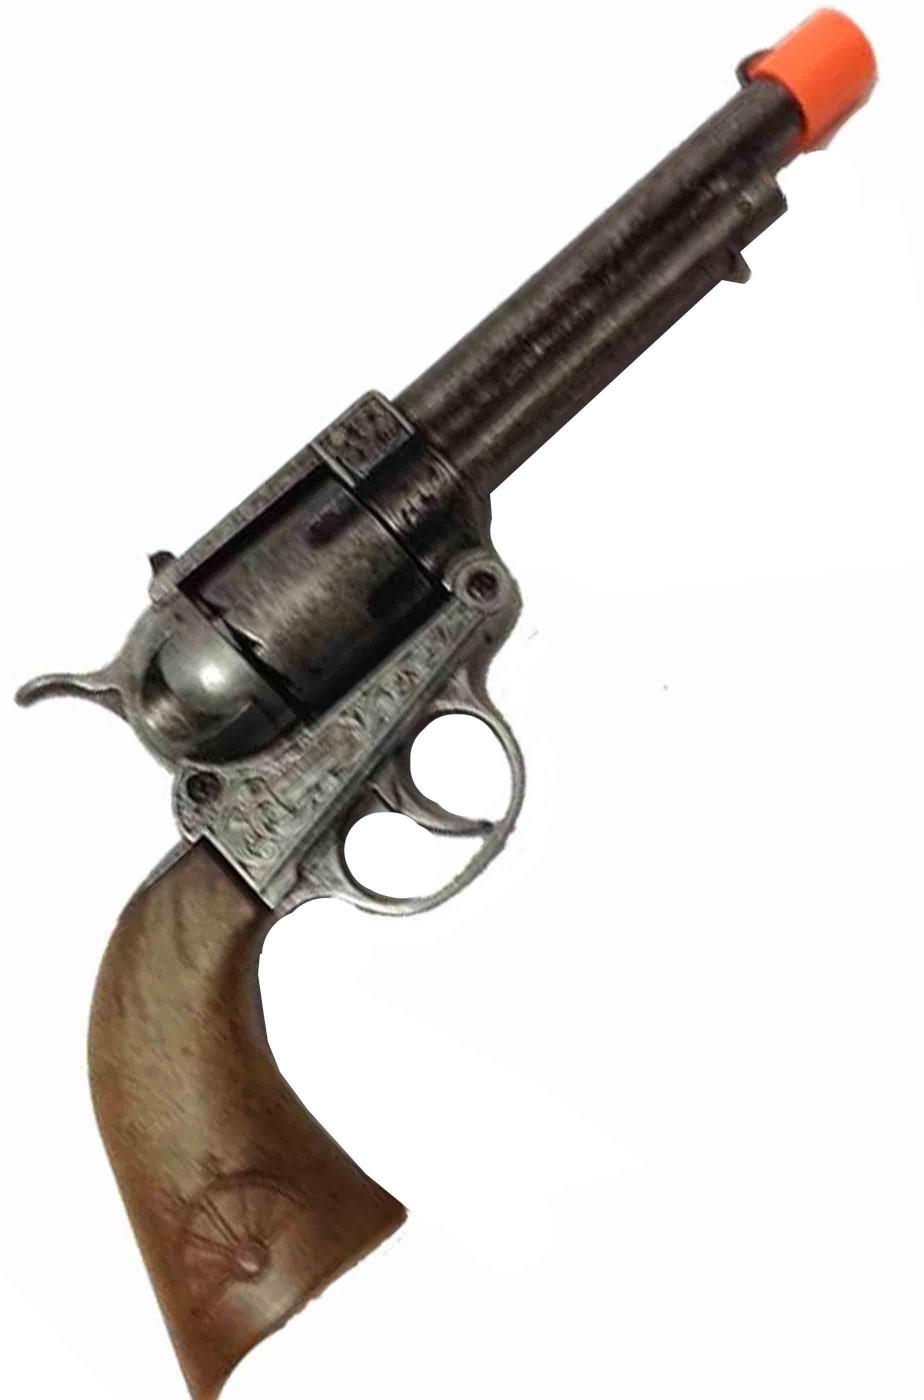 Pistola giocattolo in metallo revolver cowboy polizia chicago anni 20